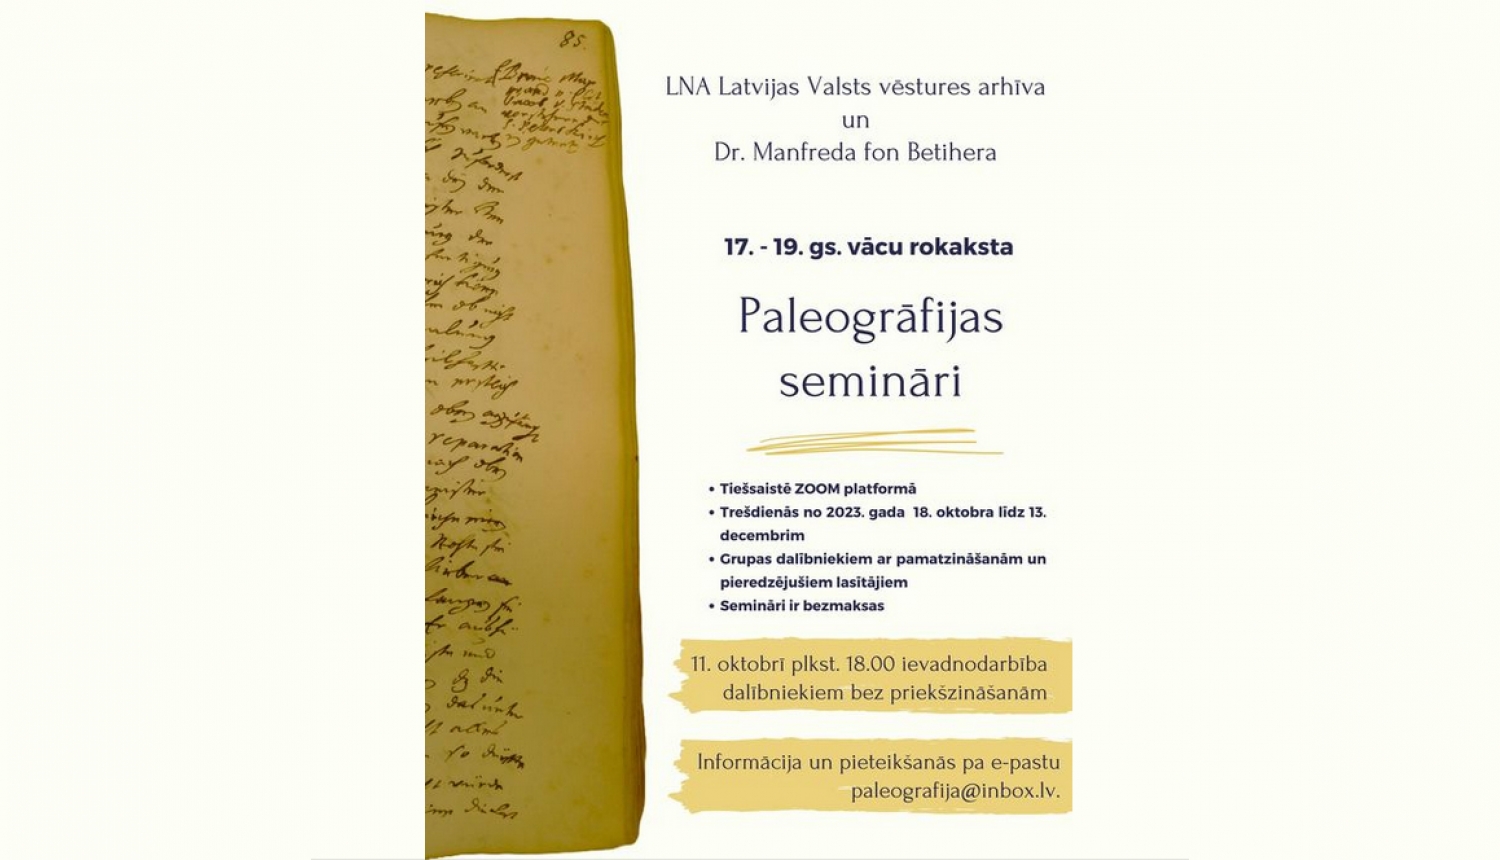 Paleogrāfijas semināru vizuālais materiāls